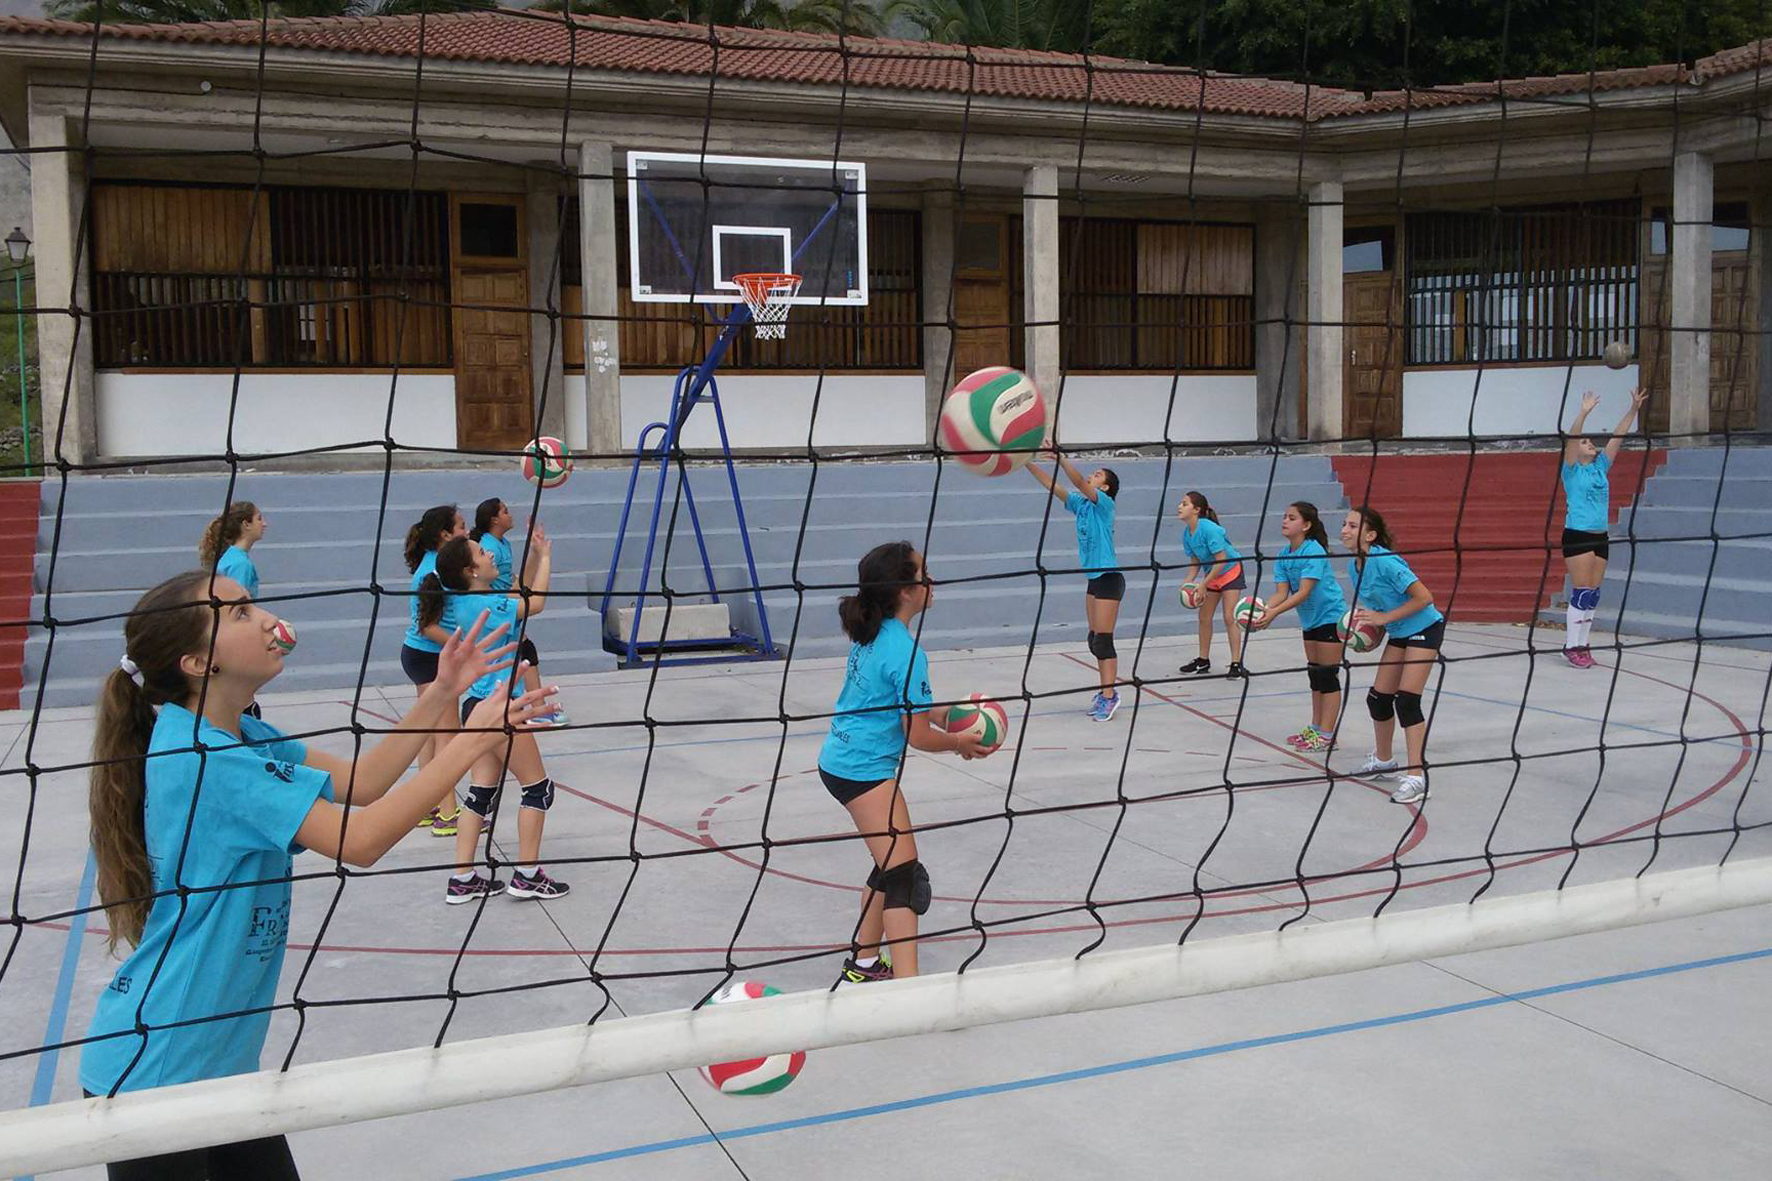 El Cabildo reabre sus instalaciones deportivas al aire libre tras la mejora de las condiciones climatológicas